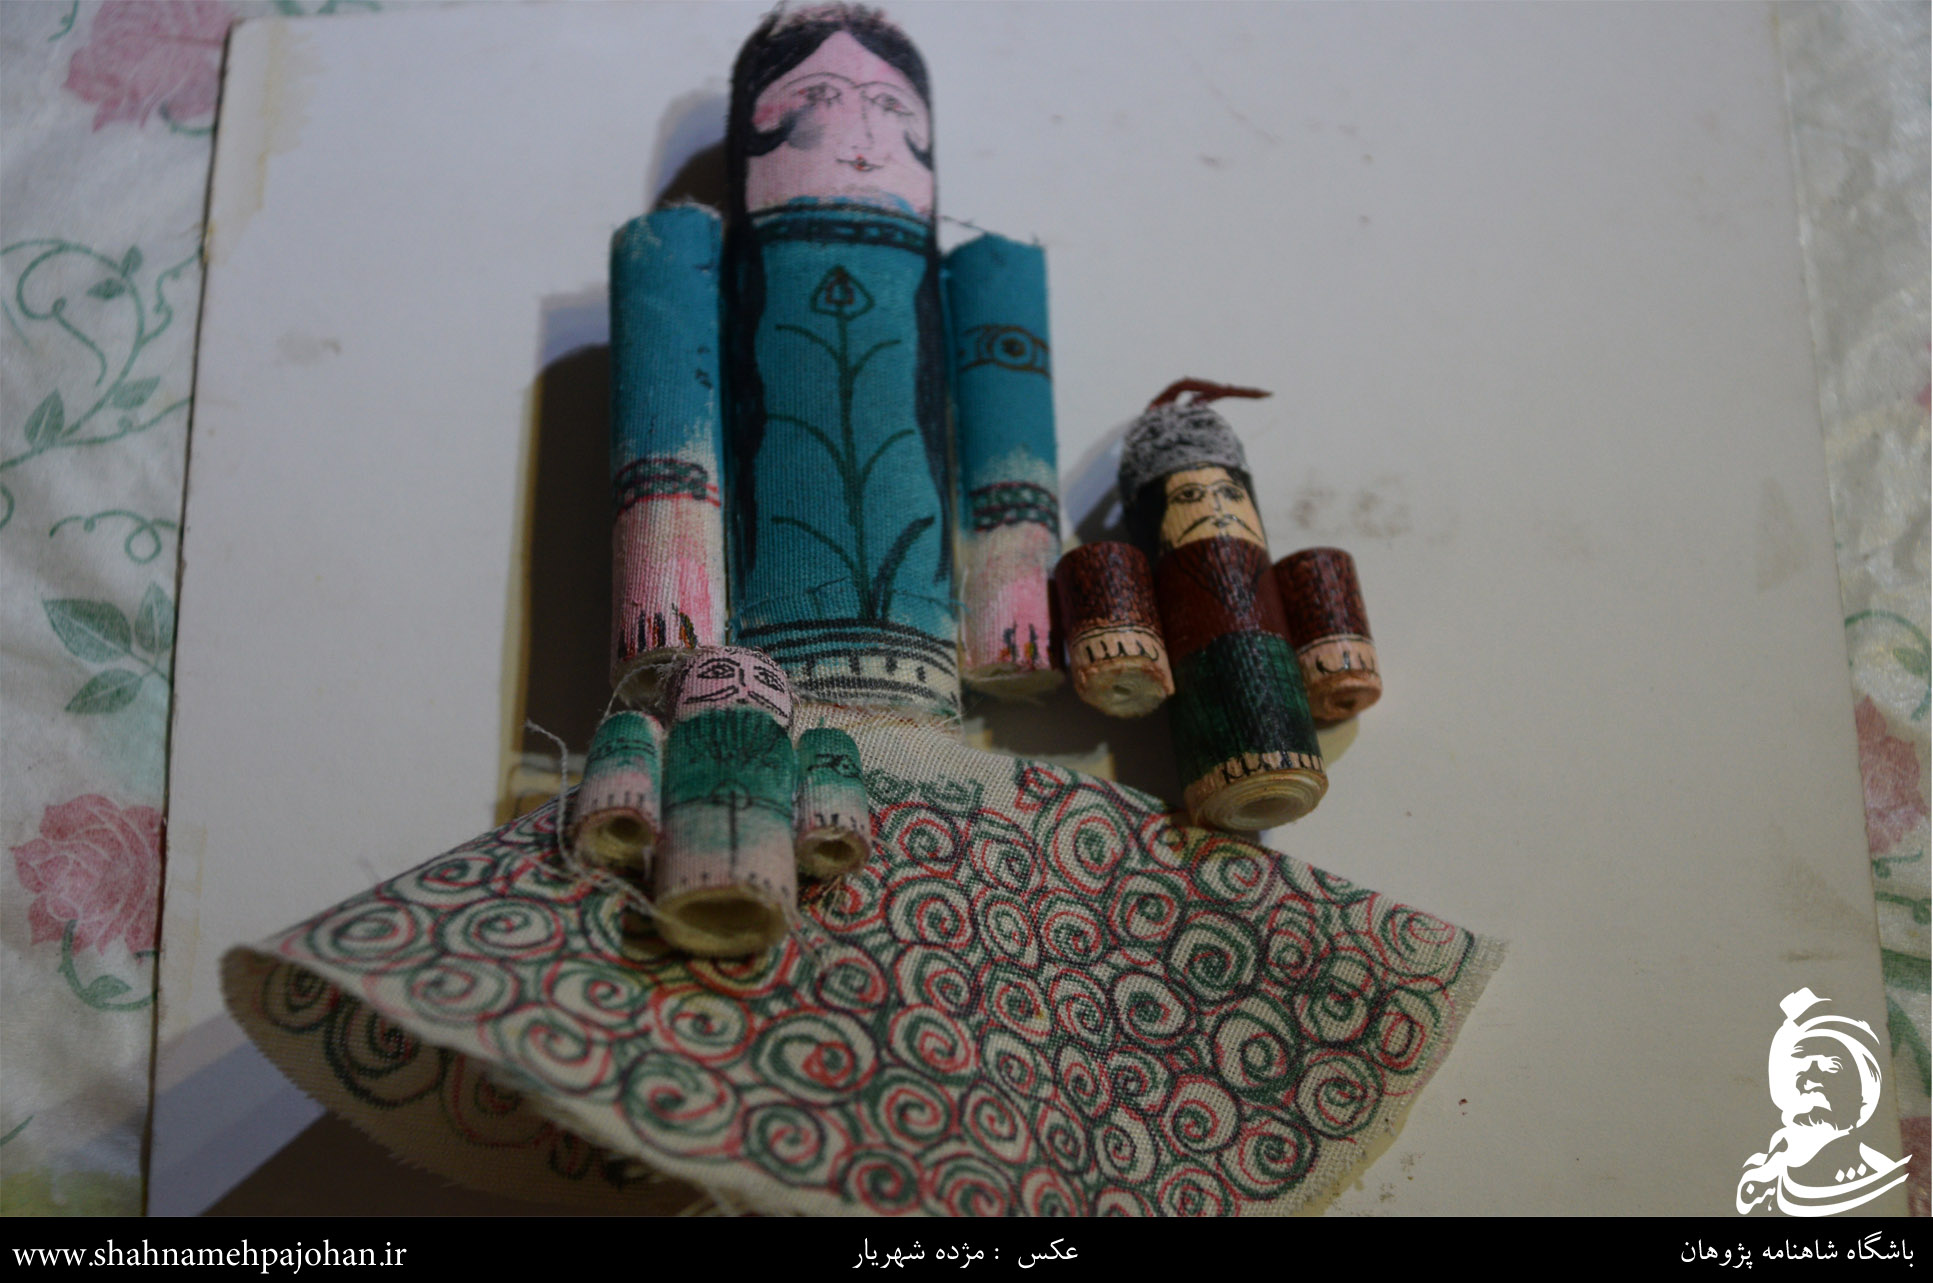 کارگاه ساخت عروسک های شاهنامه در موزه عروسک های ملل